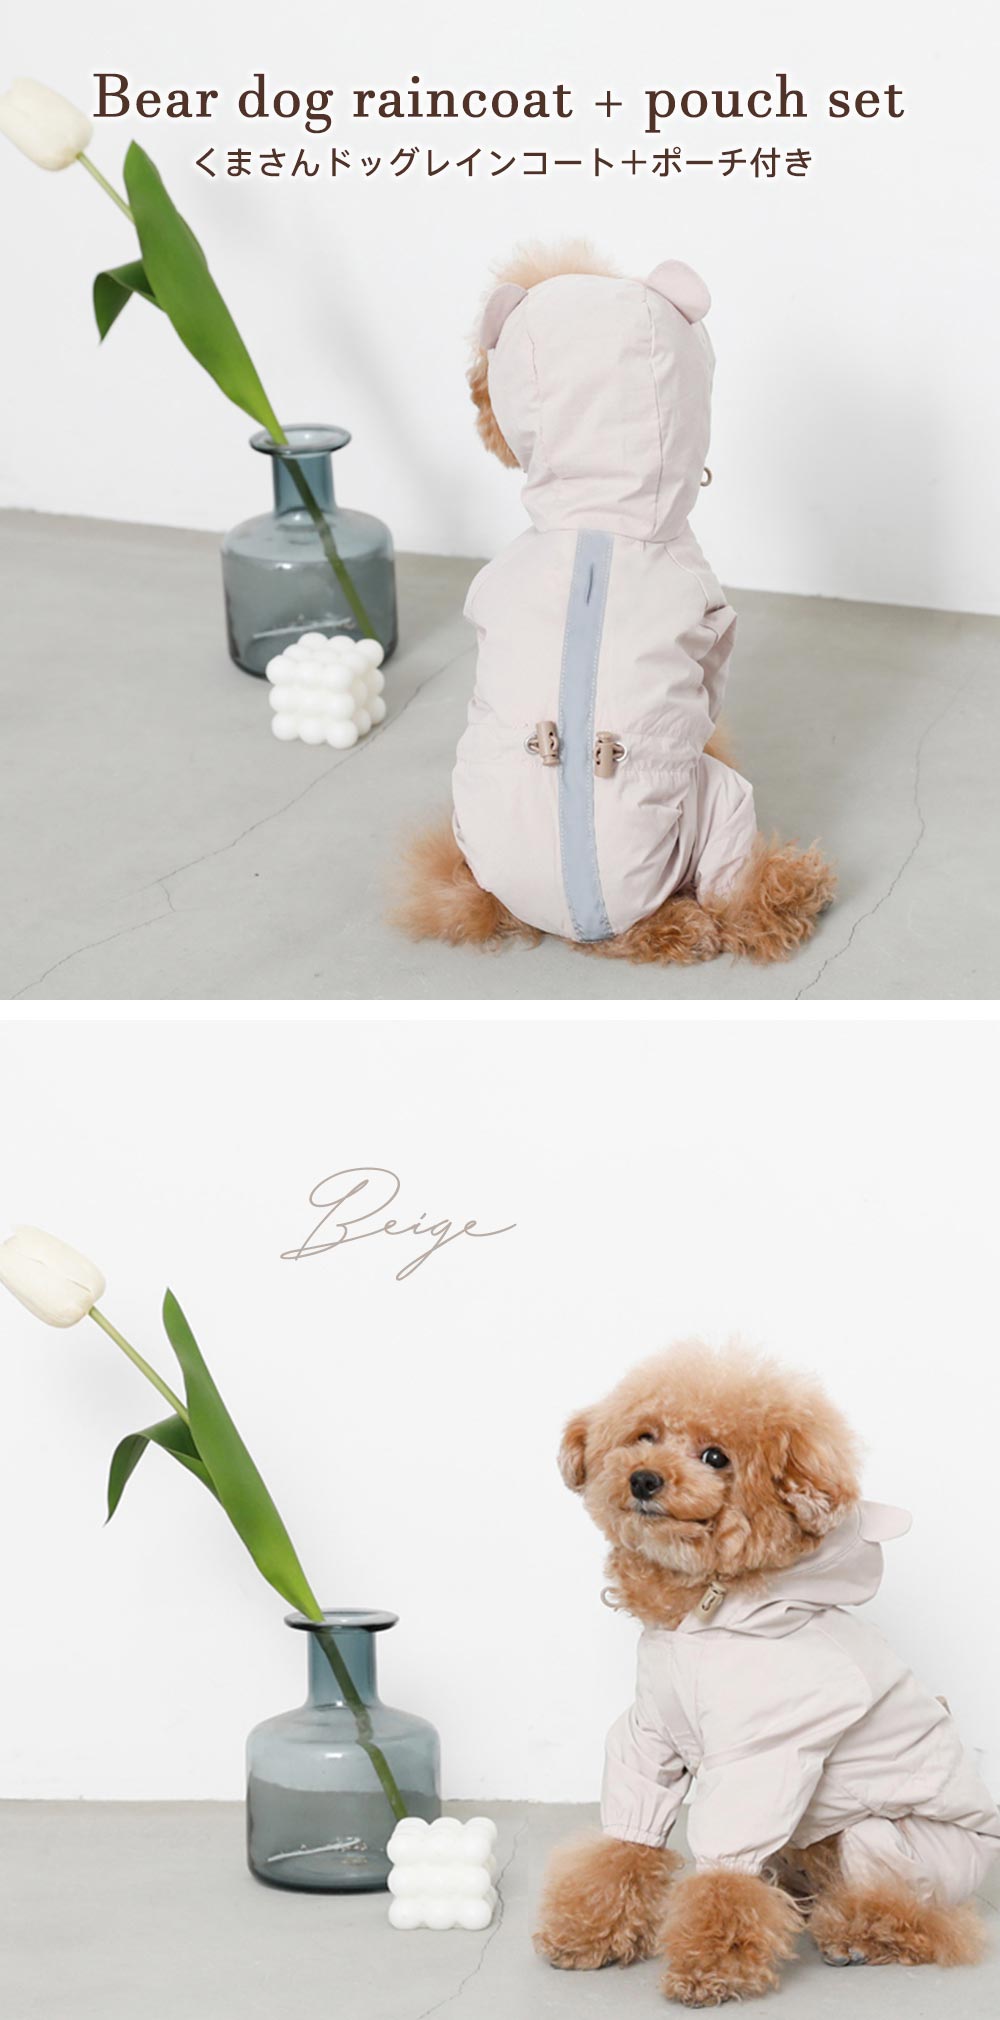 Small dog/dog clothing/raincoat/tie/rainy season/kappa/bear/bear/with pouch/main image